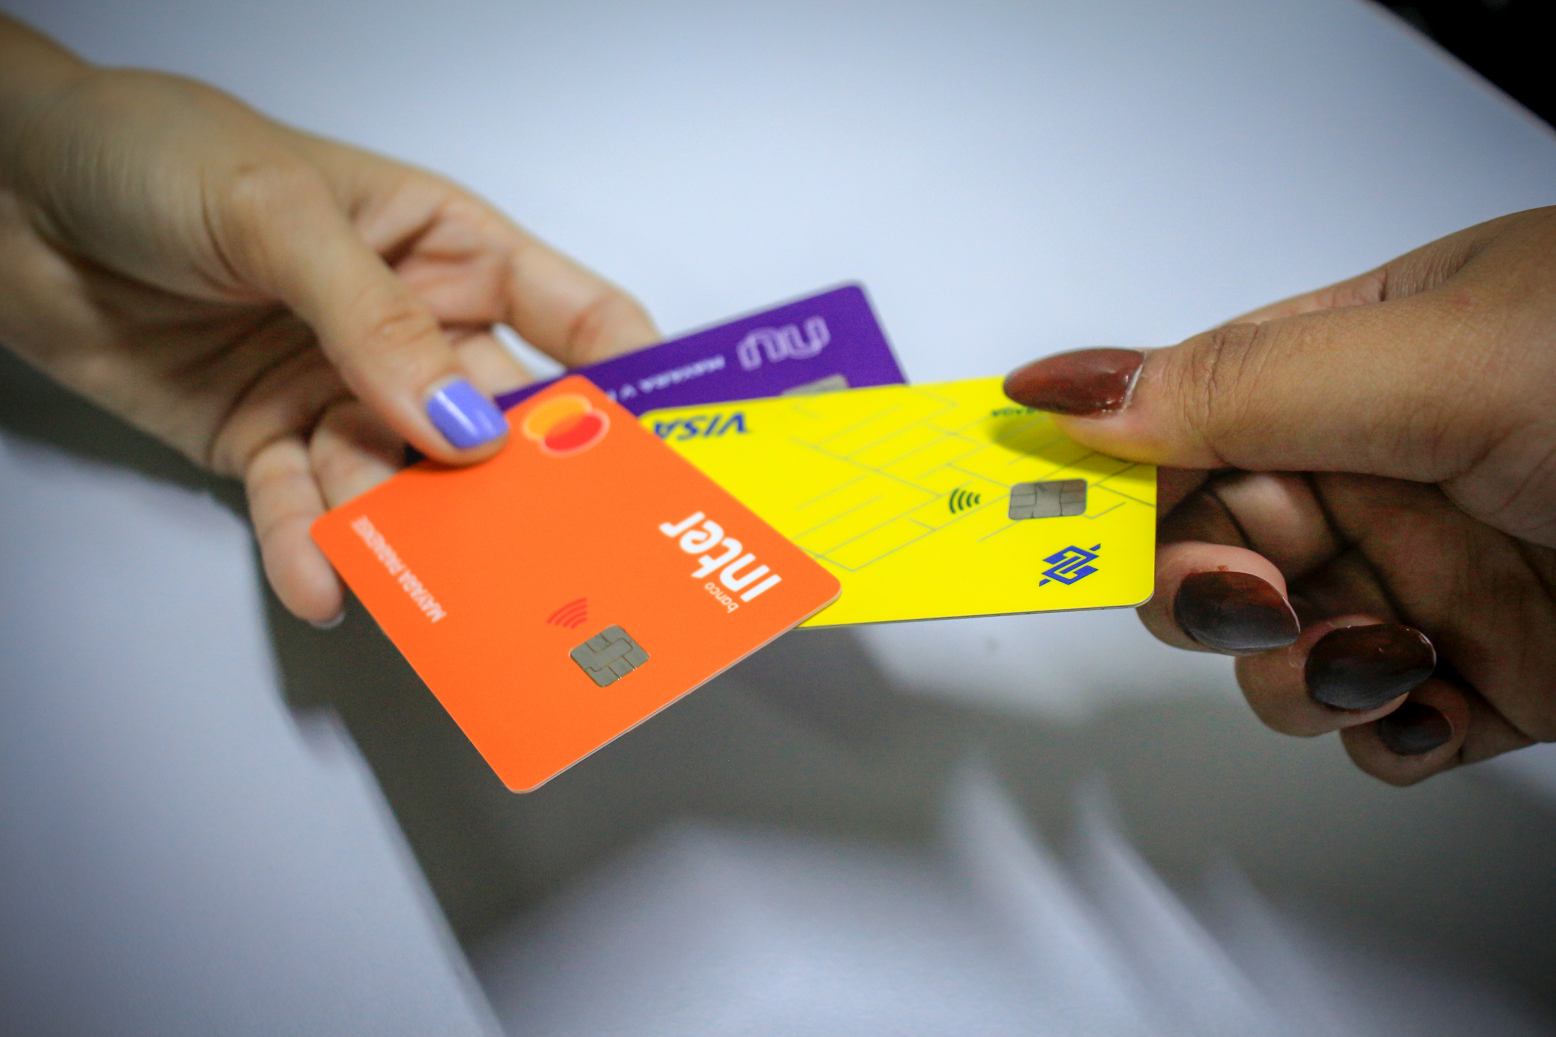 PC-AM alerta sobre golpes envolvendo pagamento com cartões de débito e crédito por aproximação